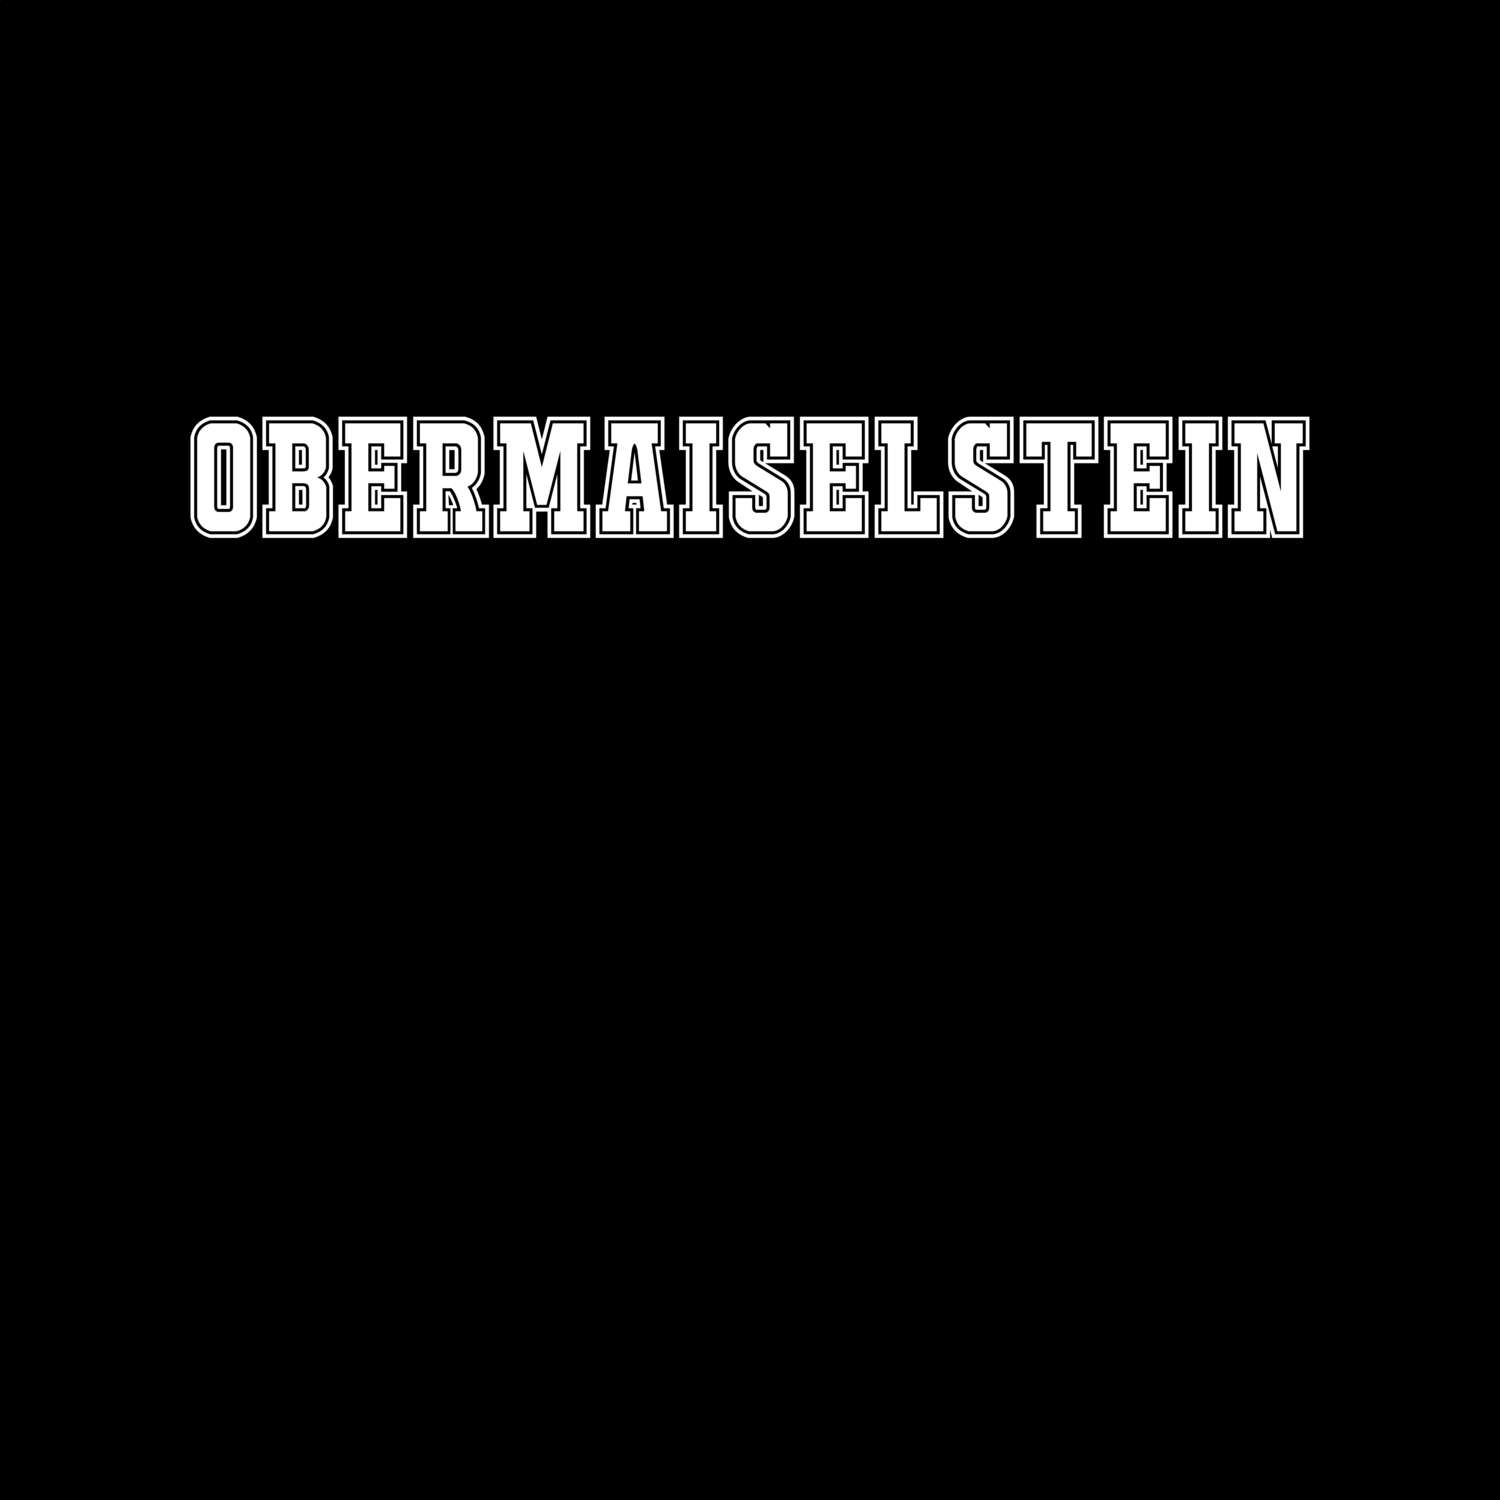 Obermaiselstein T-Shirt »Classic«